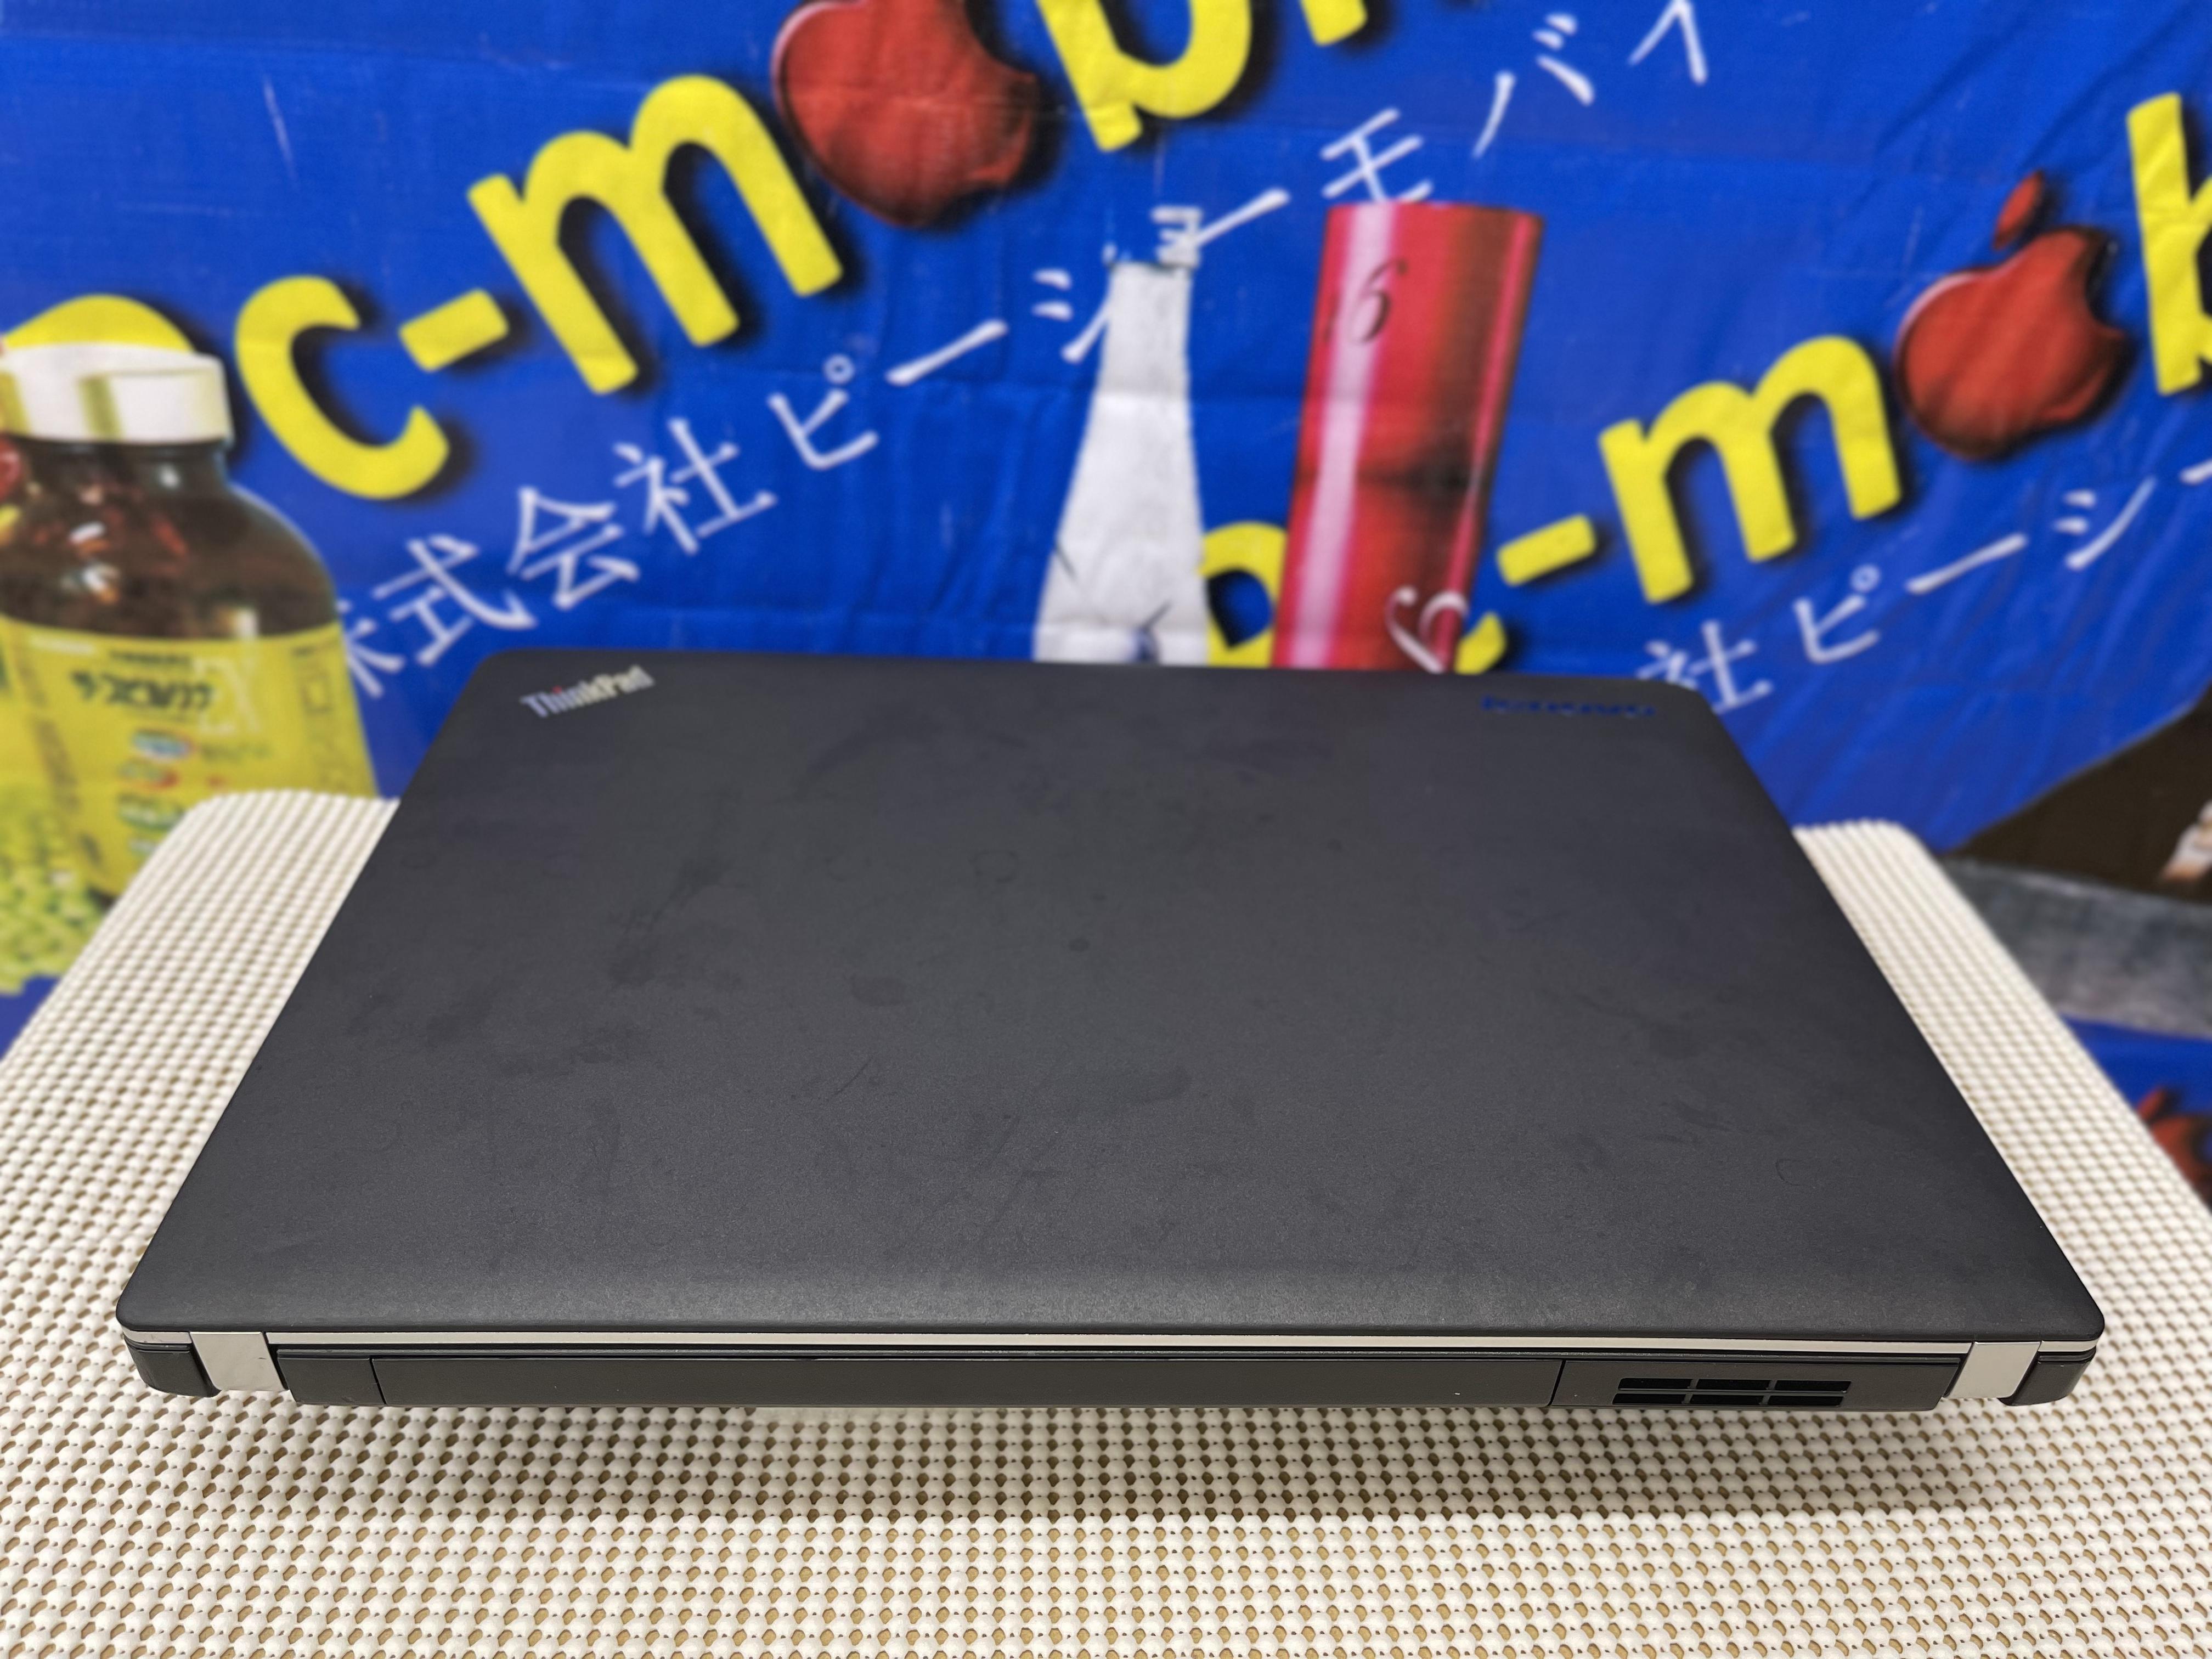 LENOVO ThinkPad E440 Gen 4 /14 inch Full led /  Core i7 / 4712MQ / 2.30GHz  / Ram 8G / SSD 256G / Win 10 tiếng việt  / MS: 20220722 C1EW